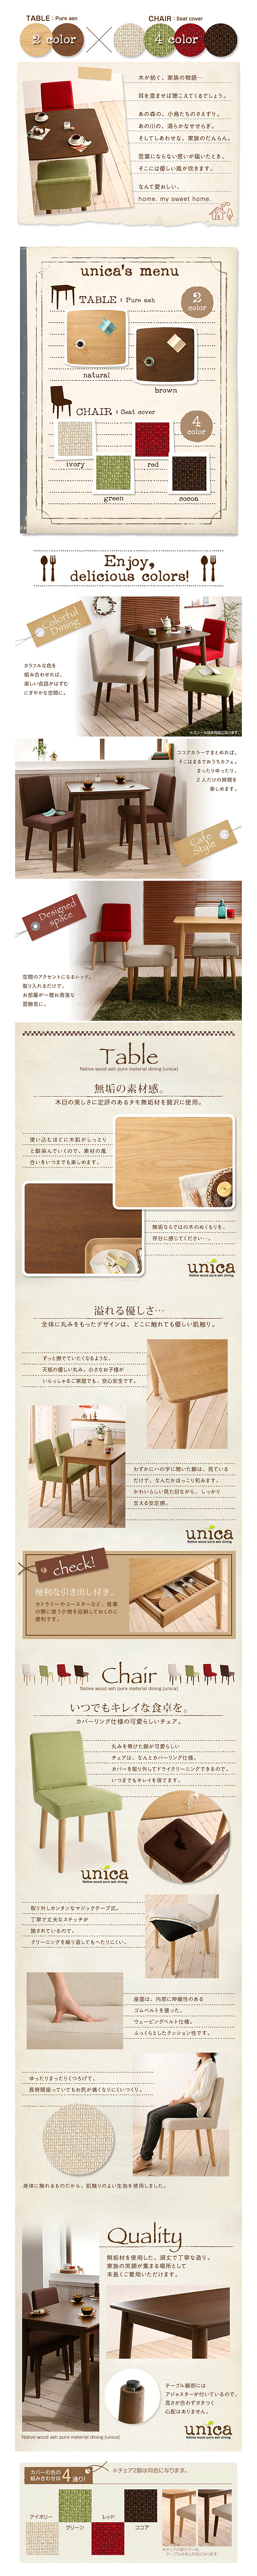 送料無料 ダイニング3点セット 天然木タモ無垢材【unica】ユニカ 